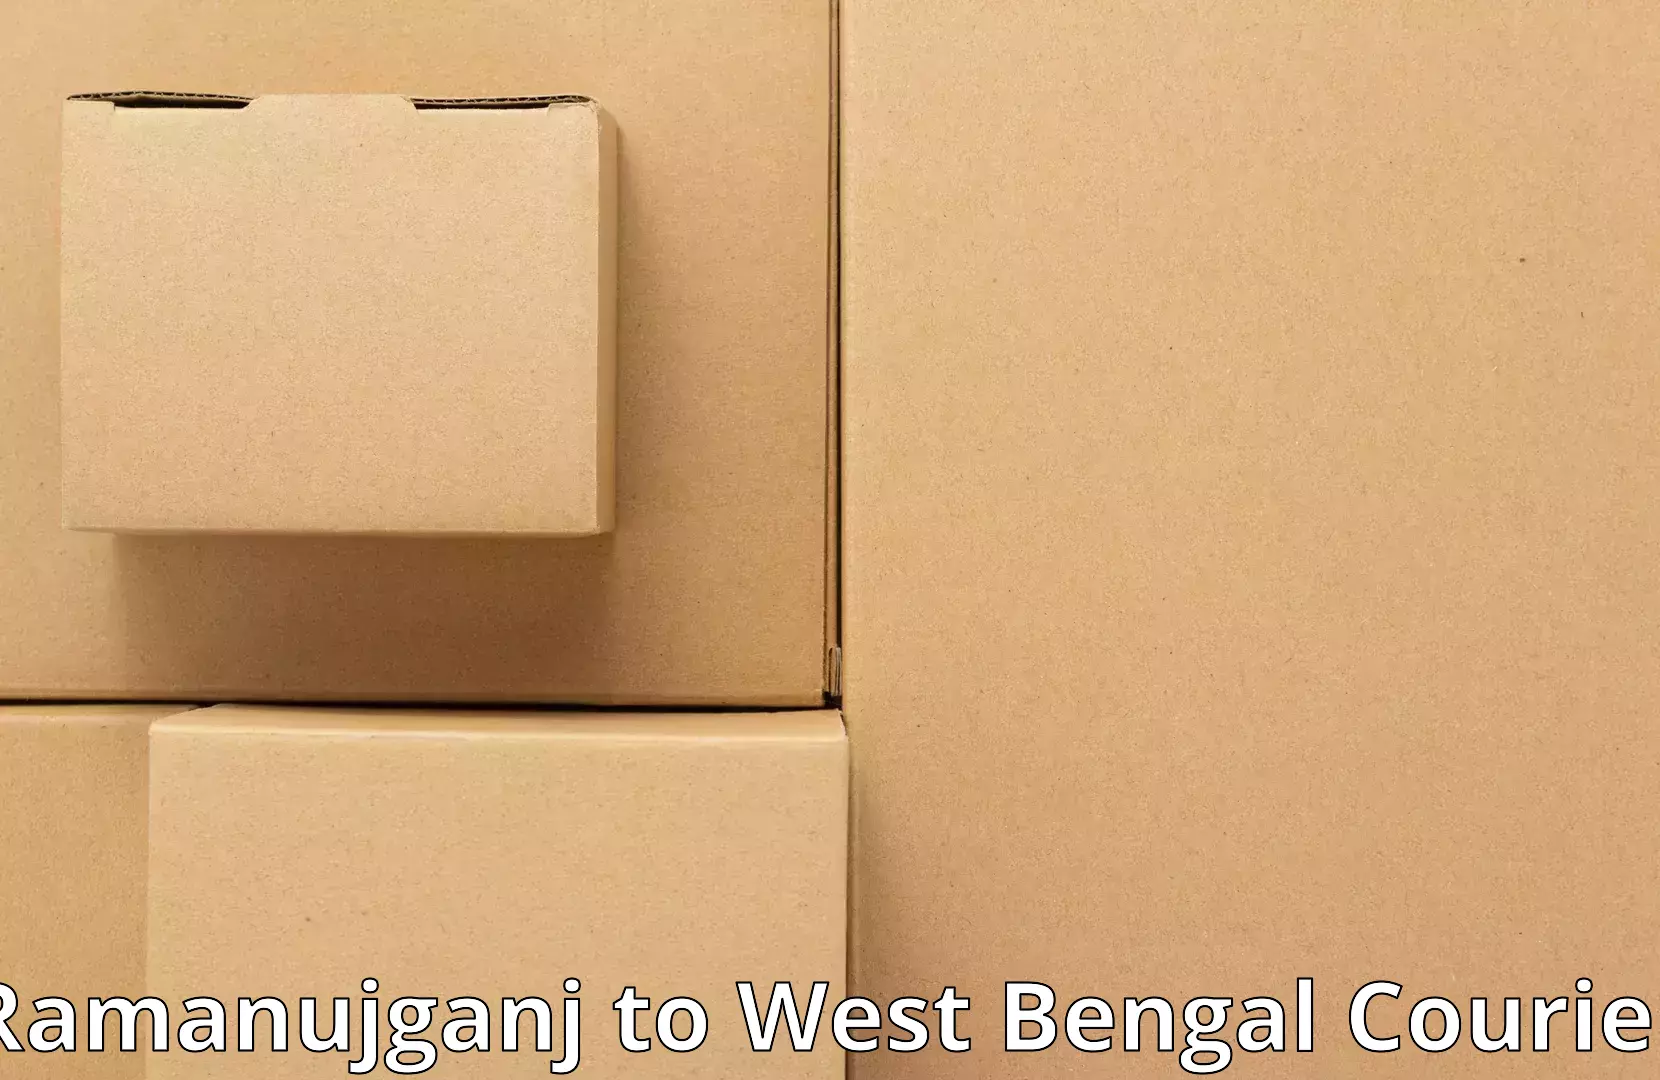 Furniture transport and storage Ramanujganj to IIT Kharagpur